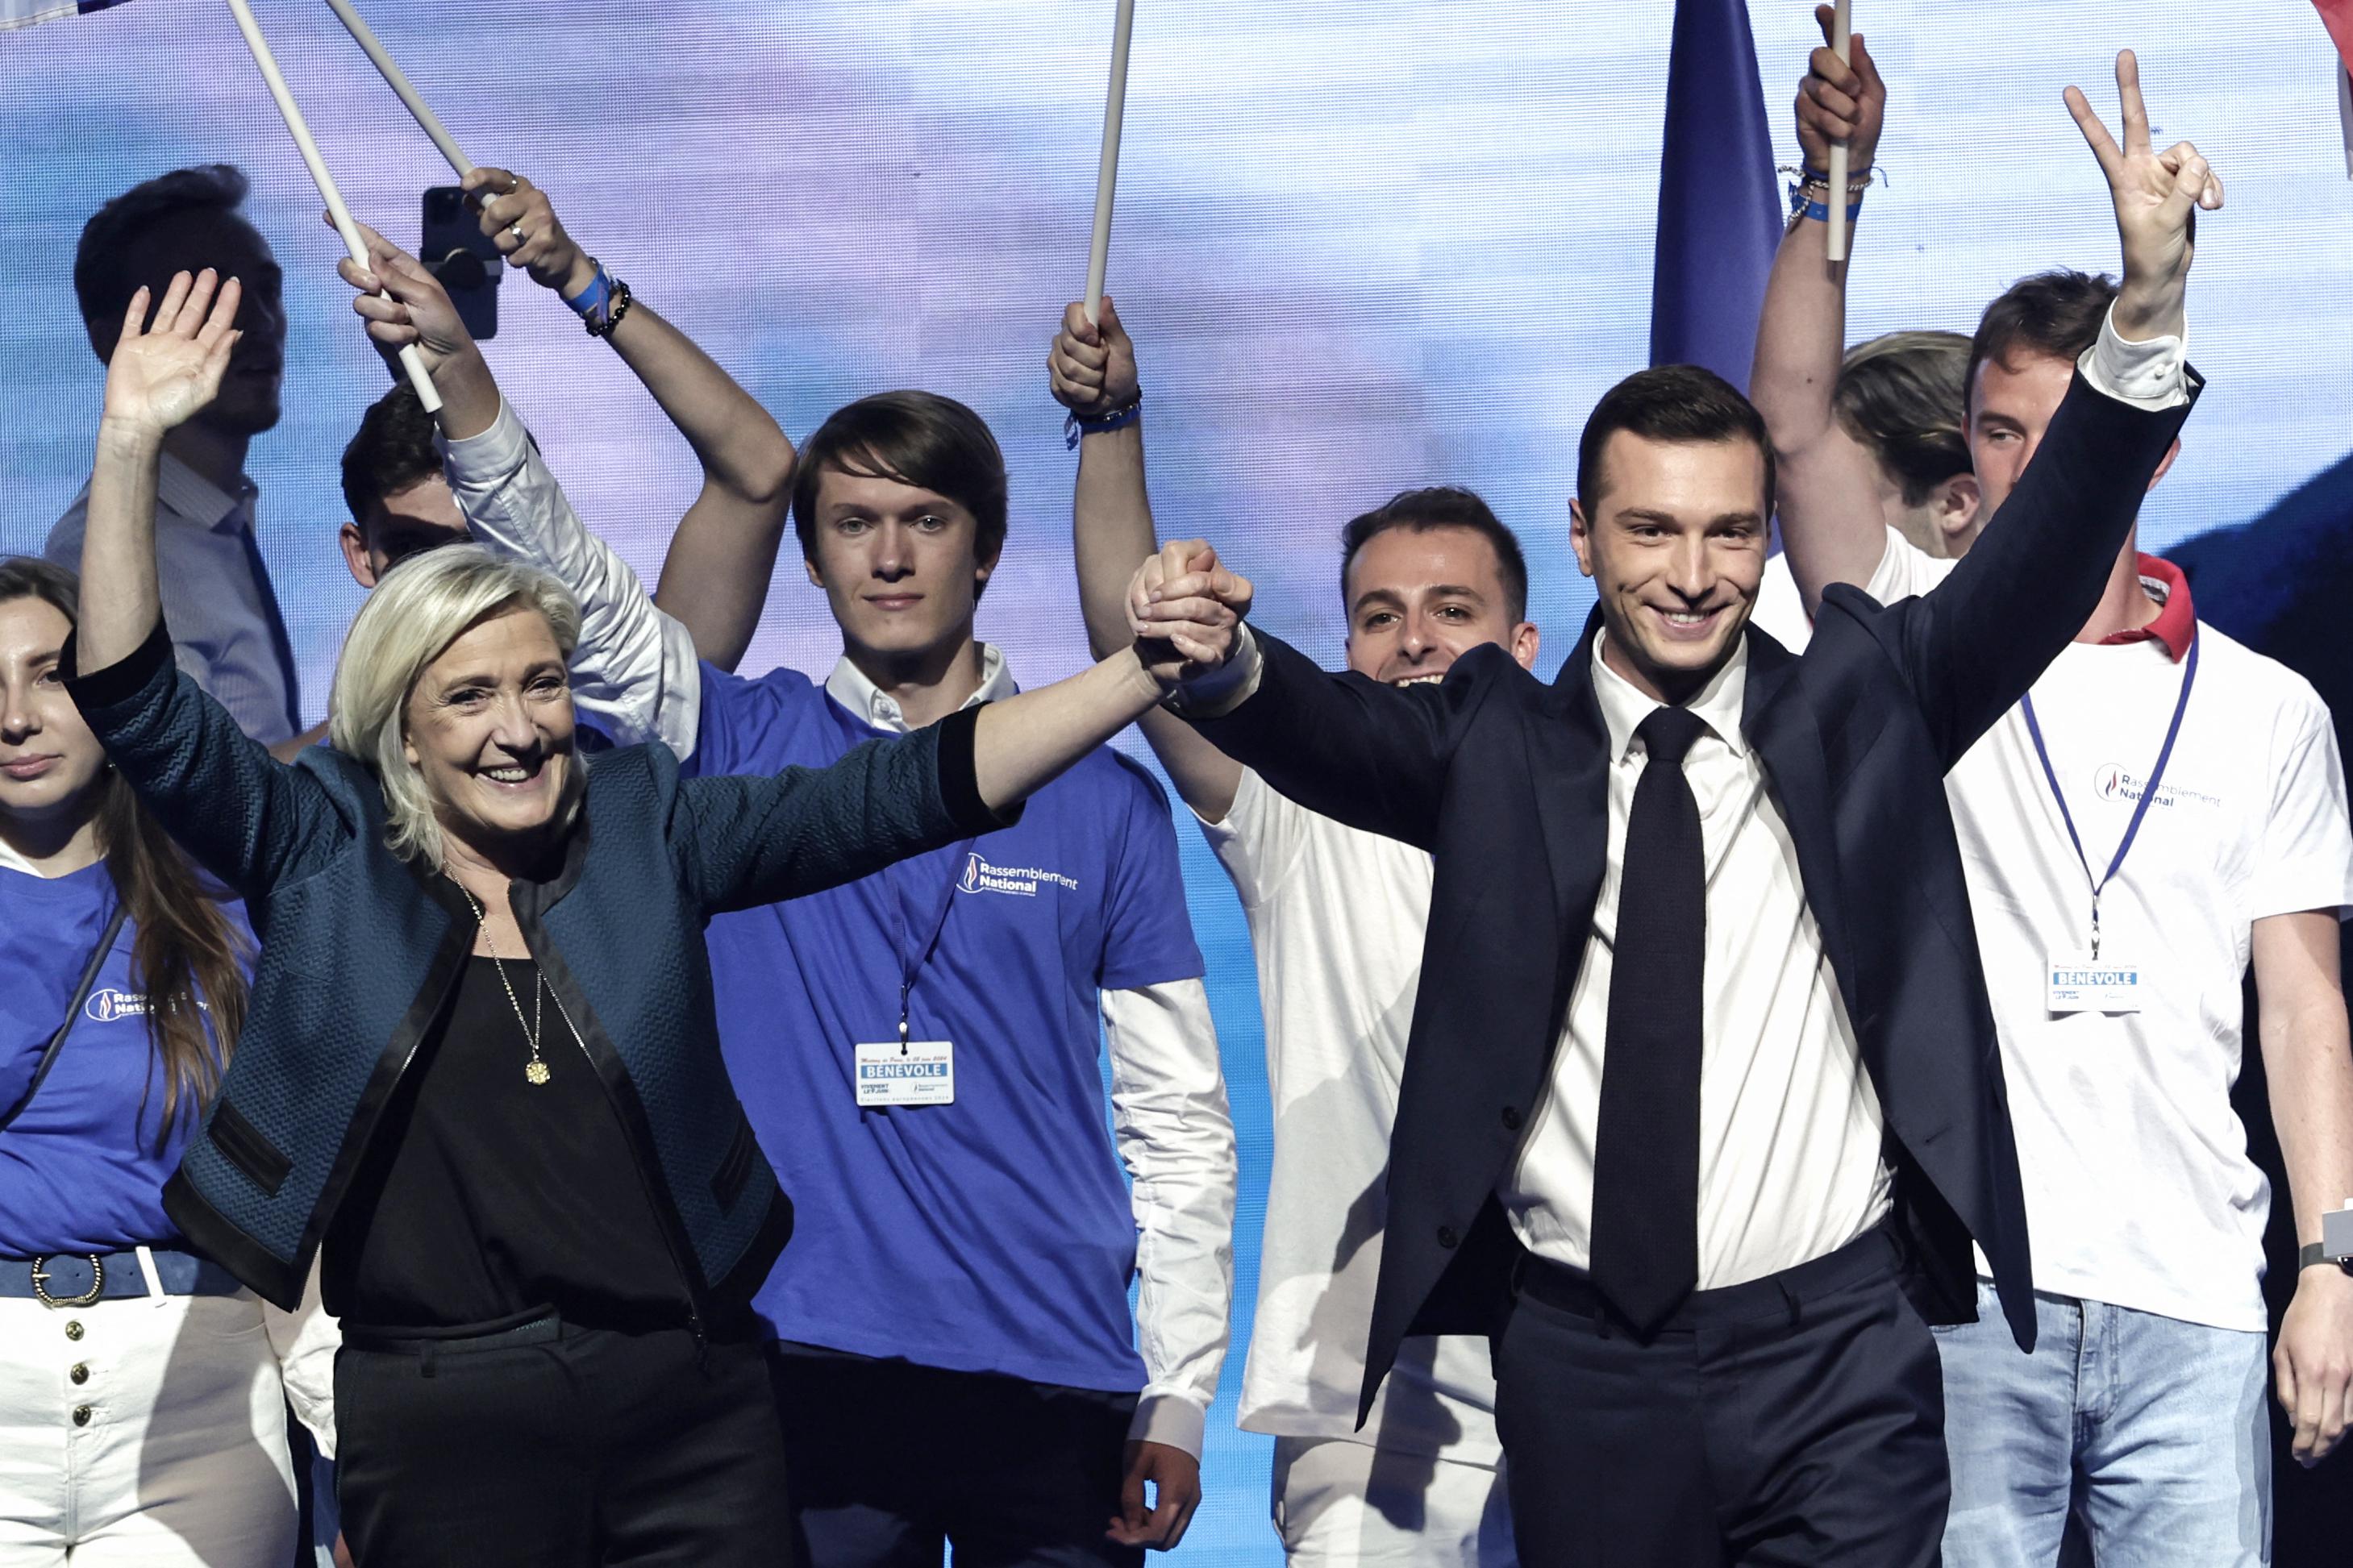 Europee Francia - stravince Le Pen - Macron scioglie Parlamento: elezioni - Boom destra anche in Germania e Austria